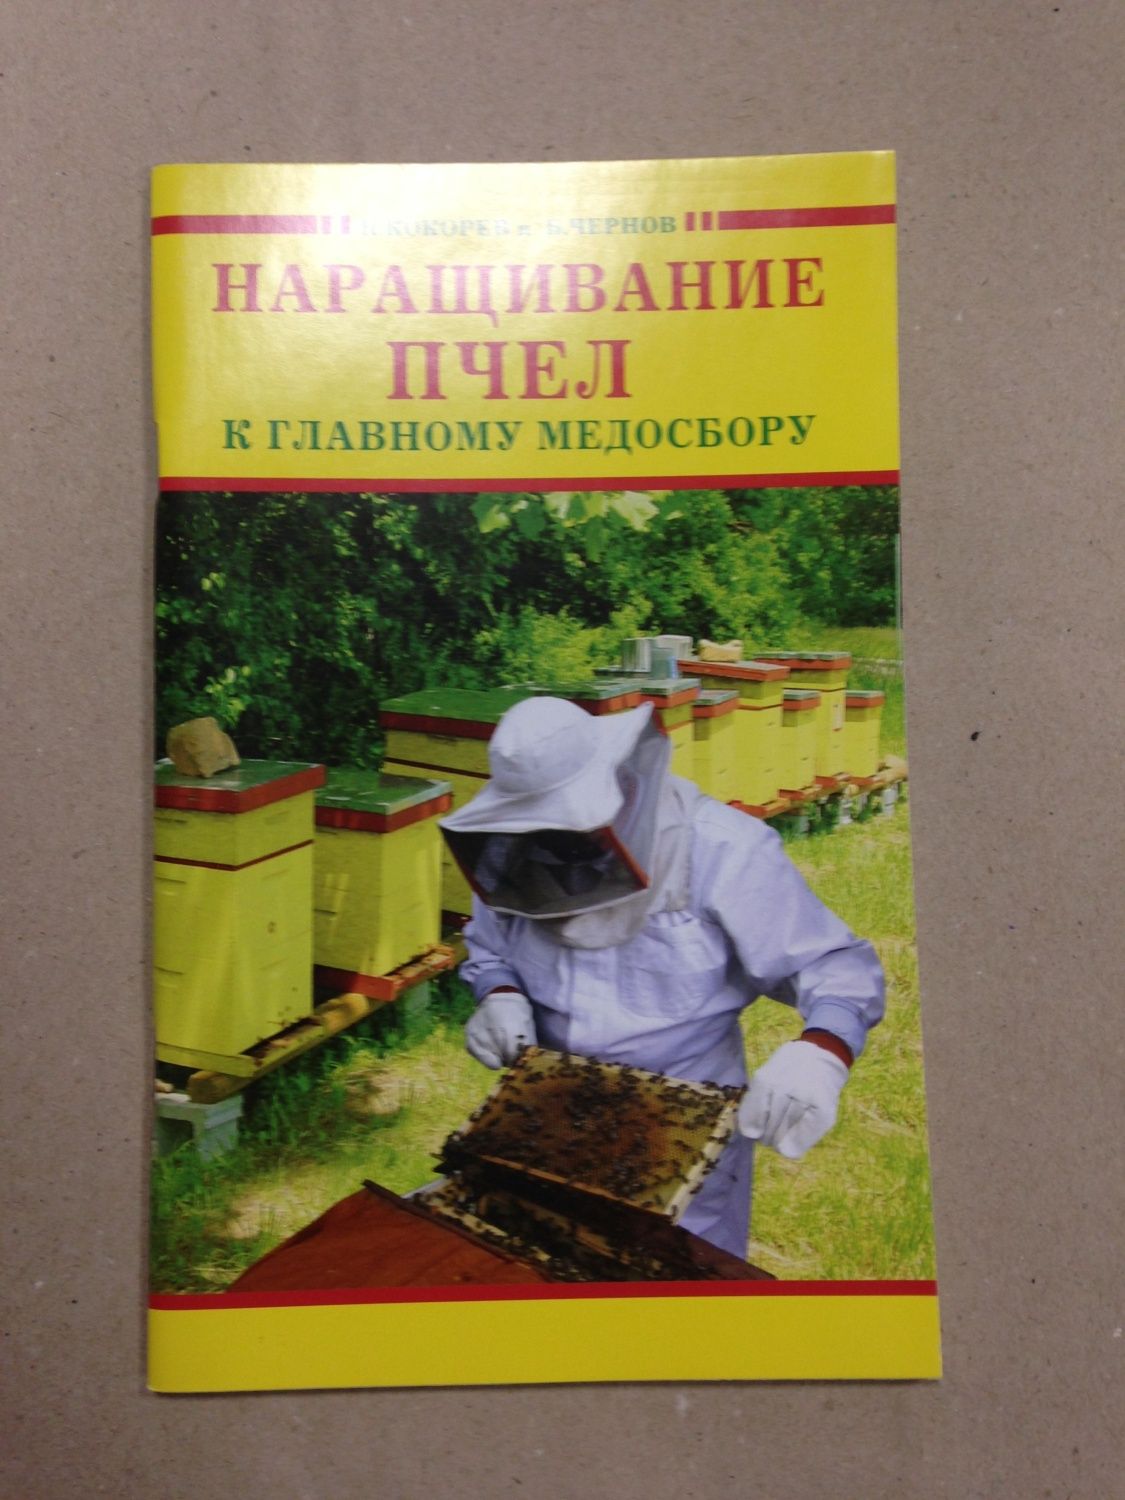 Купить: Книга "Наращивание пчел к главному медосбору"  - для пчеловодов